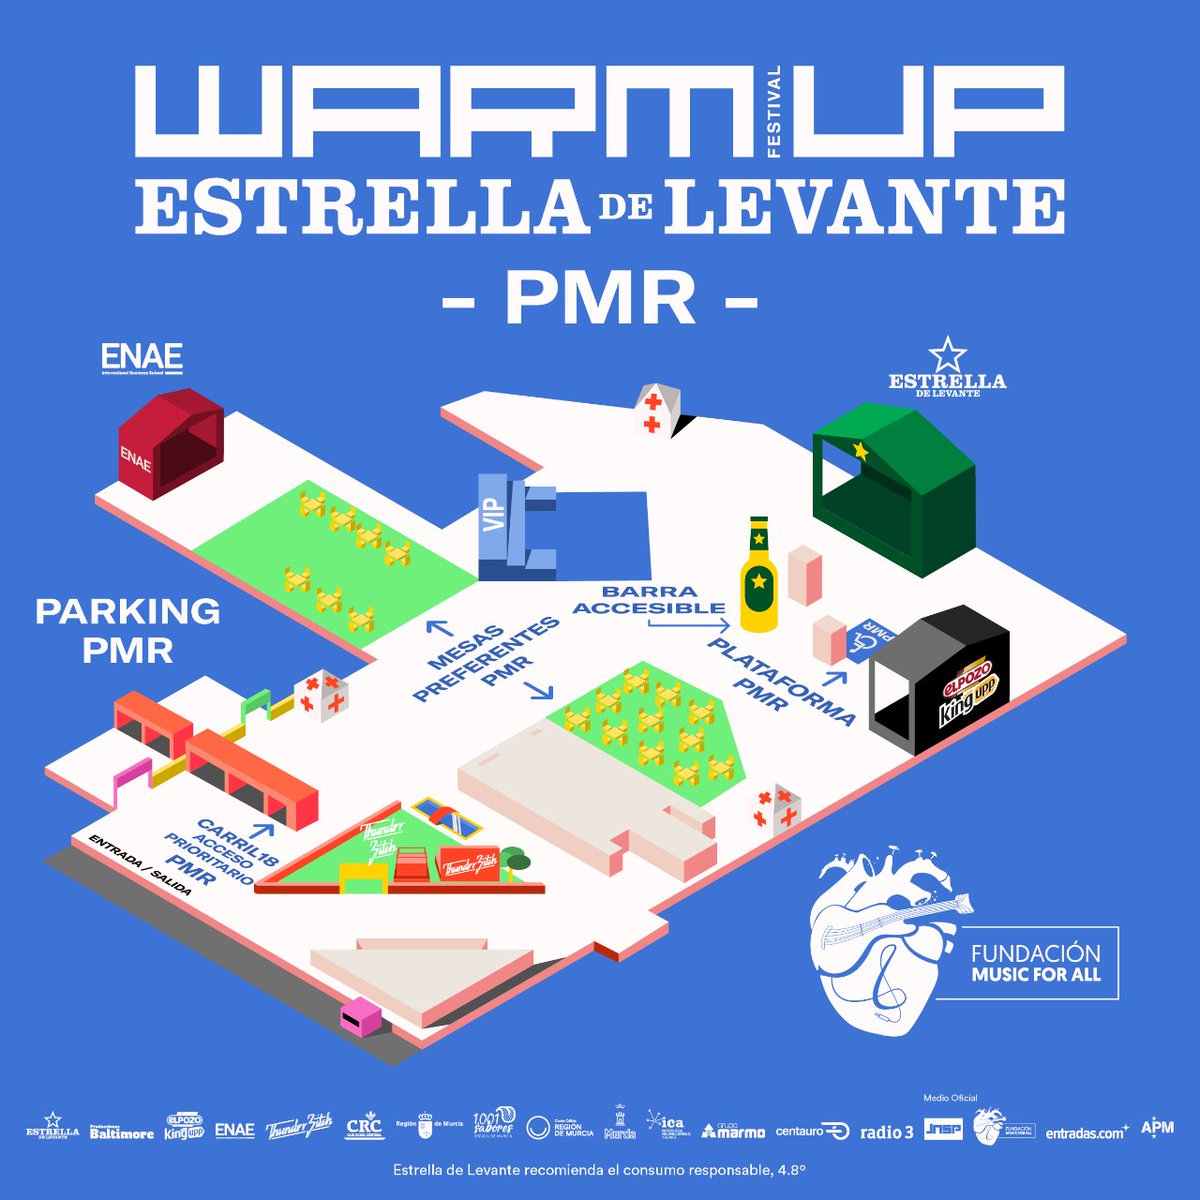 WARMupfestival tweet picture